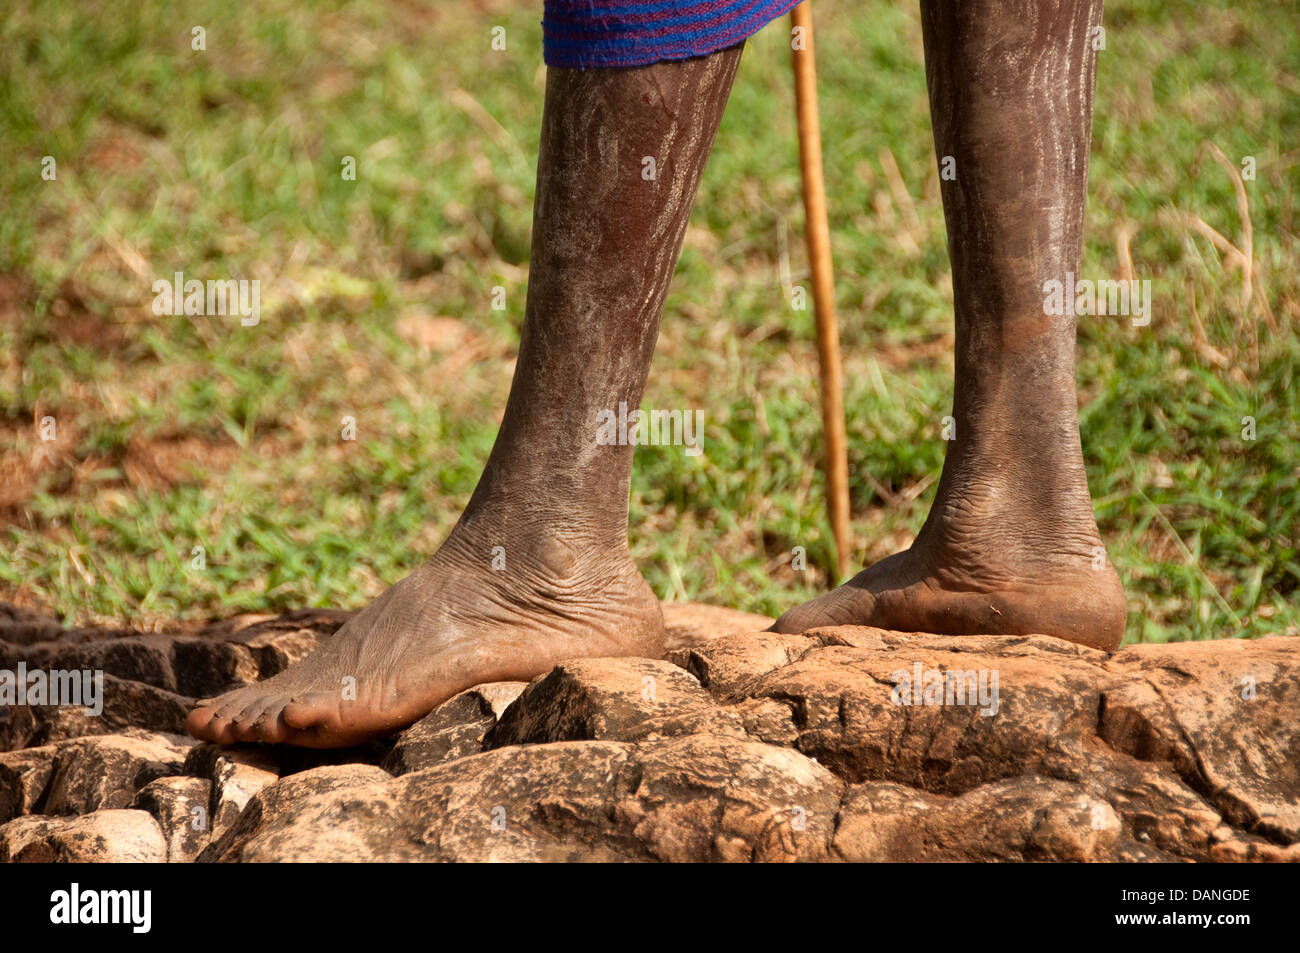 Feet of a Suri (Surma) shepherd with a pole, Ethiopia Stock Photo